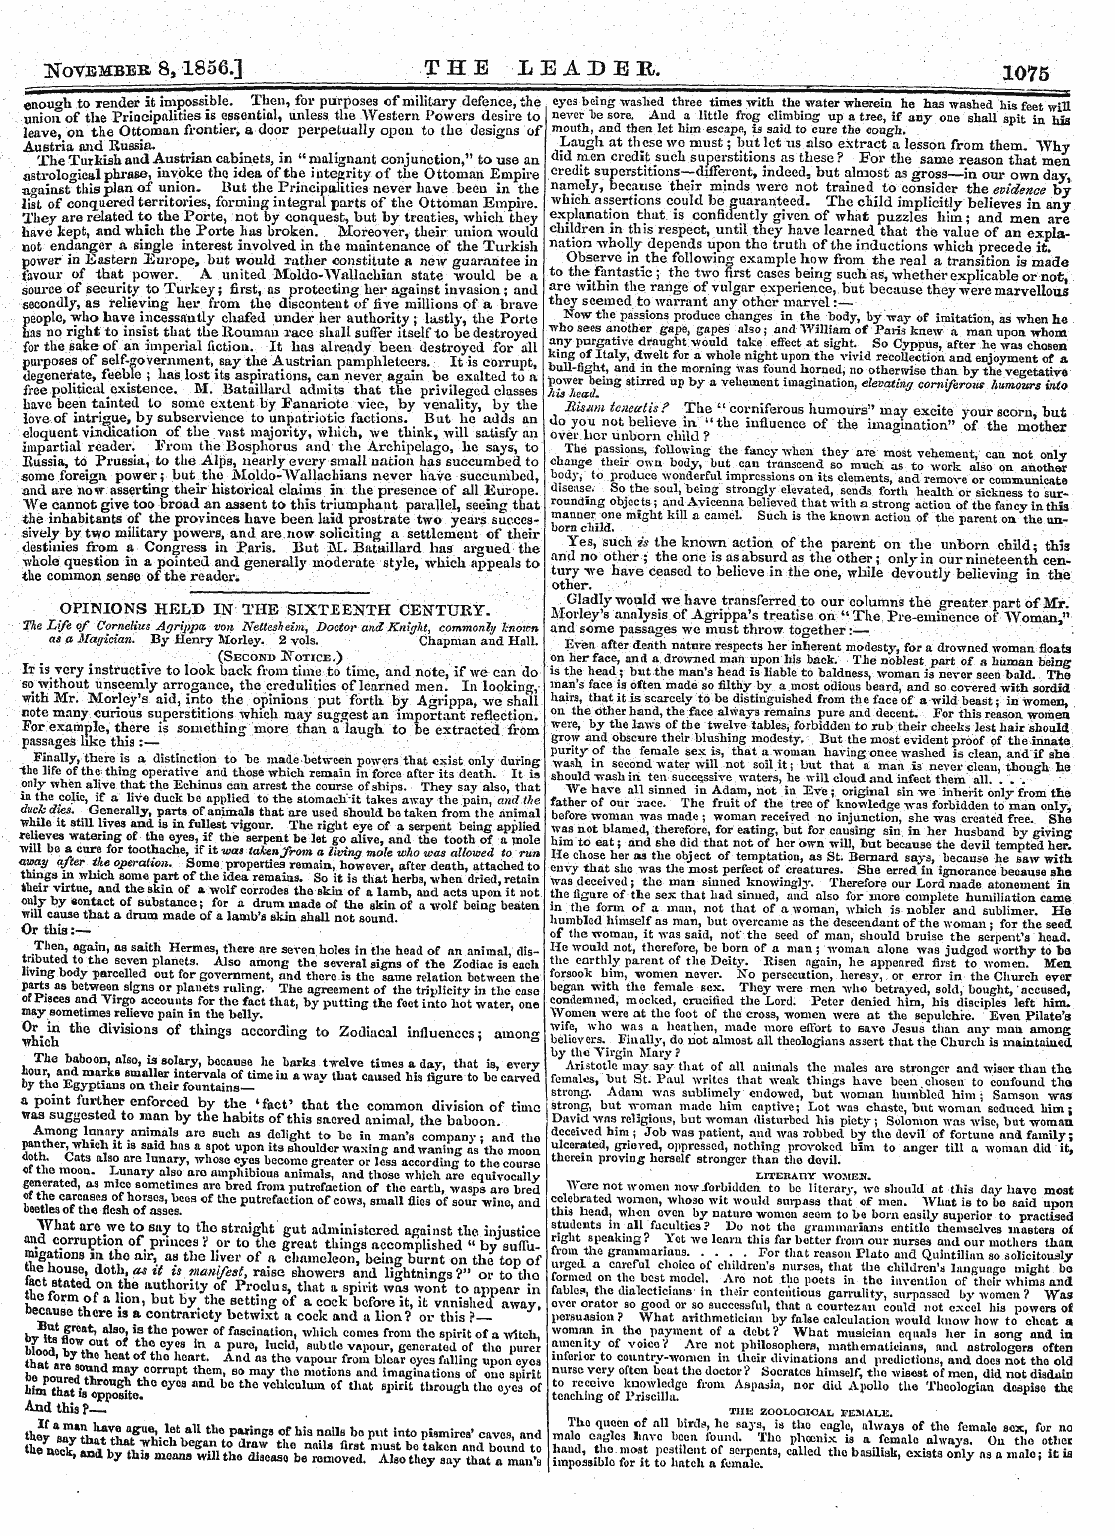 Leader (1850-1860): jS F Y, 2nd edition - November 8,1856.] The Leader. 1075